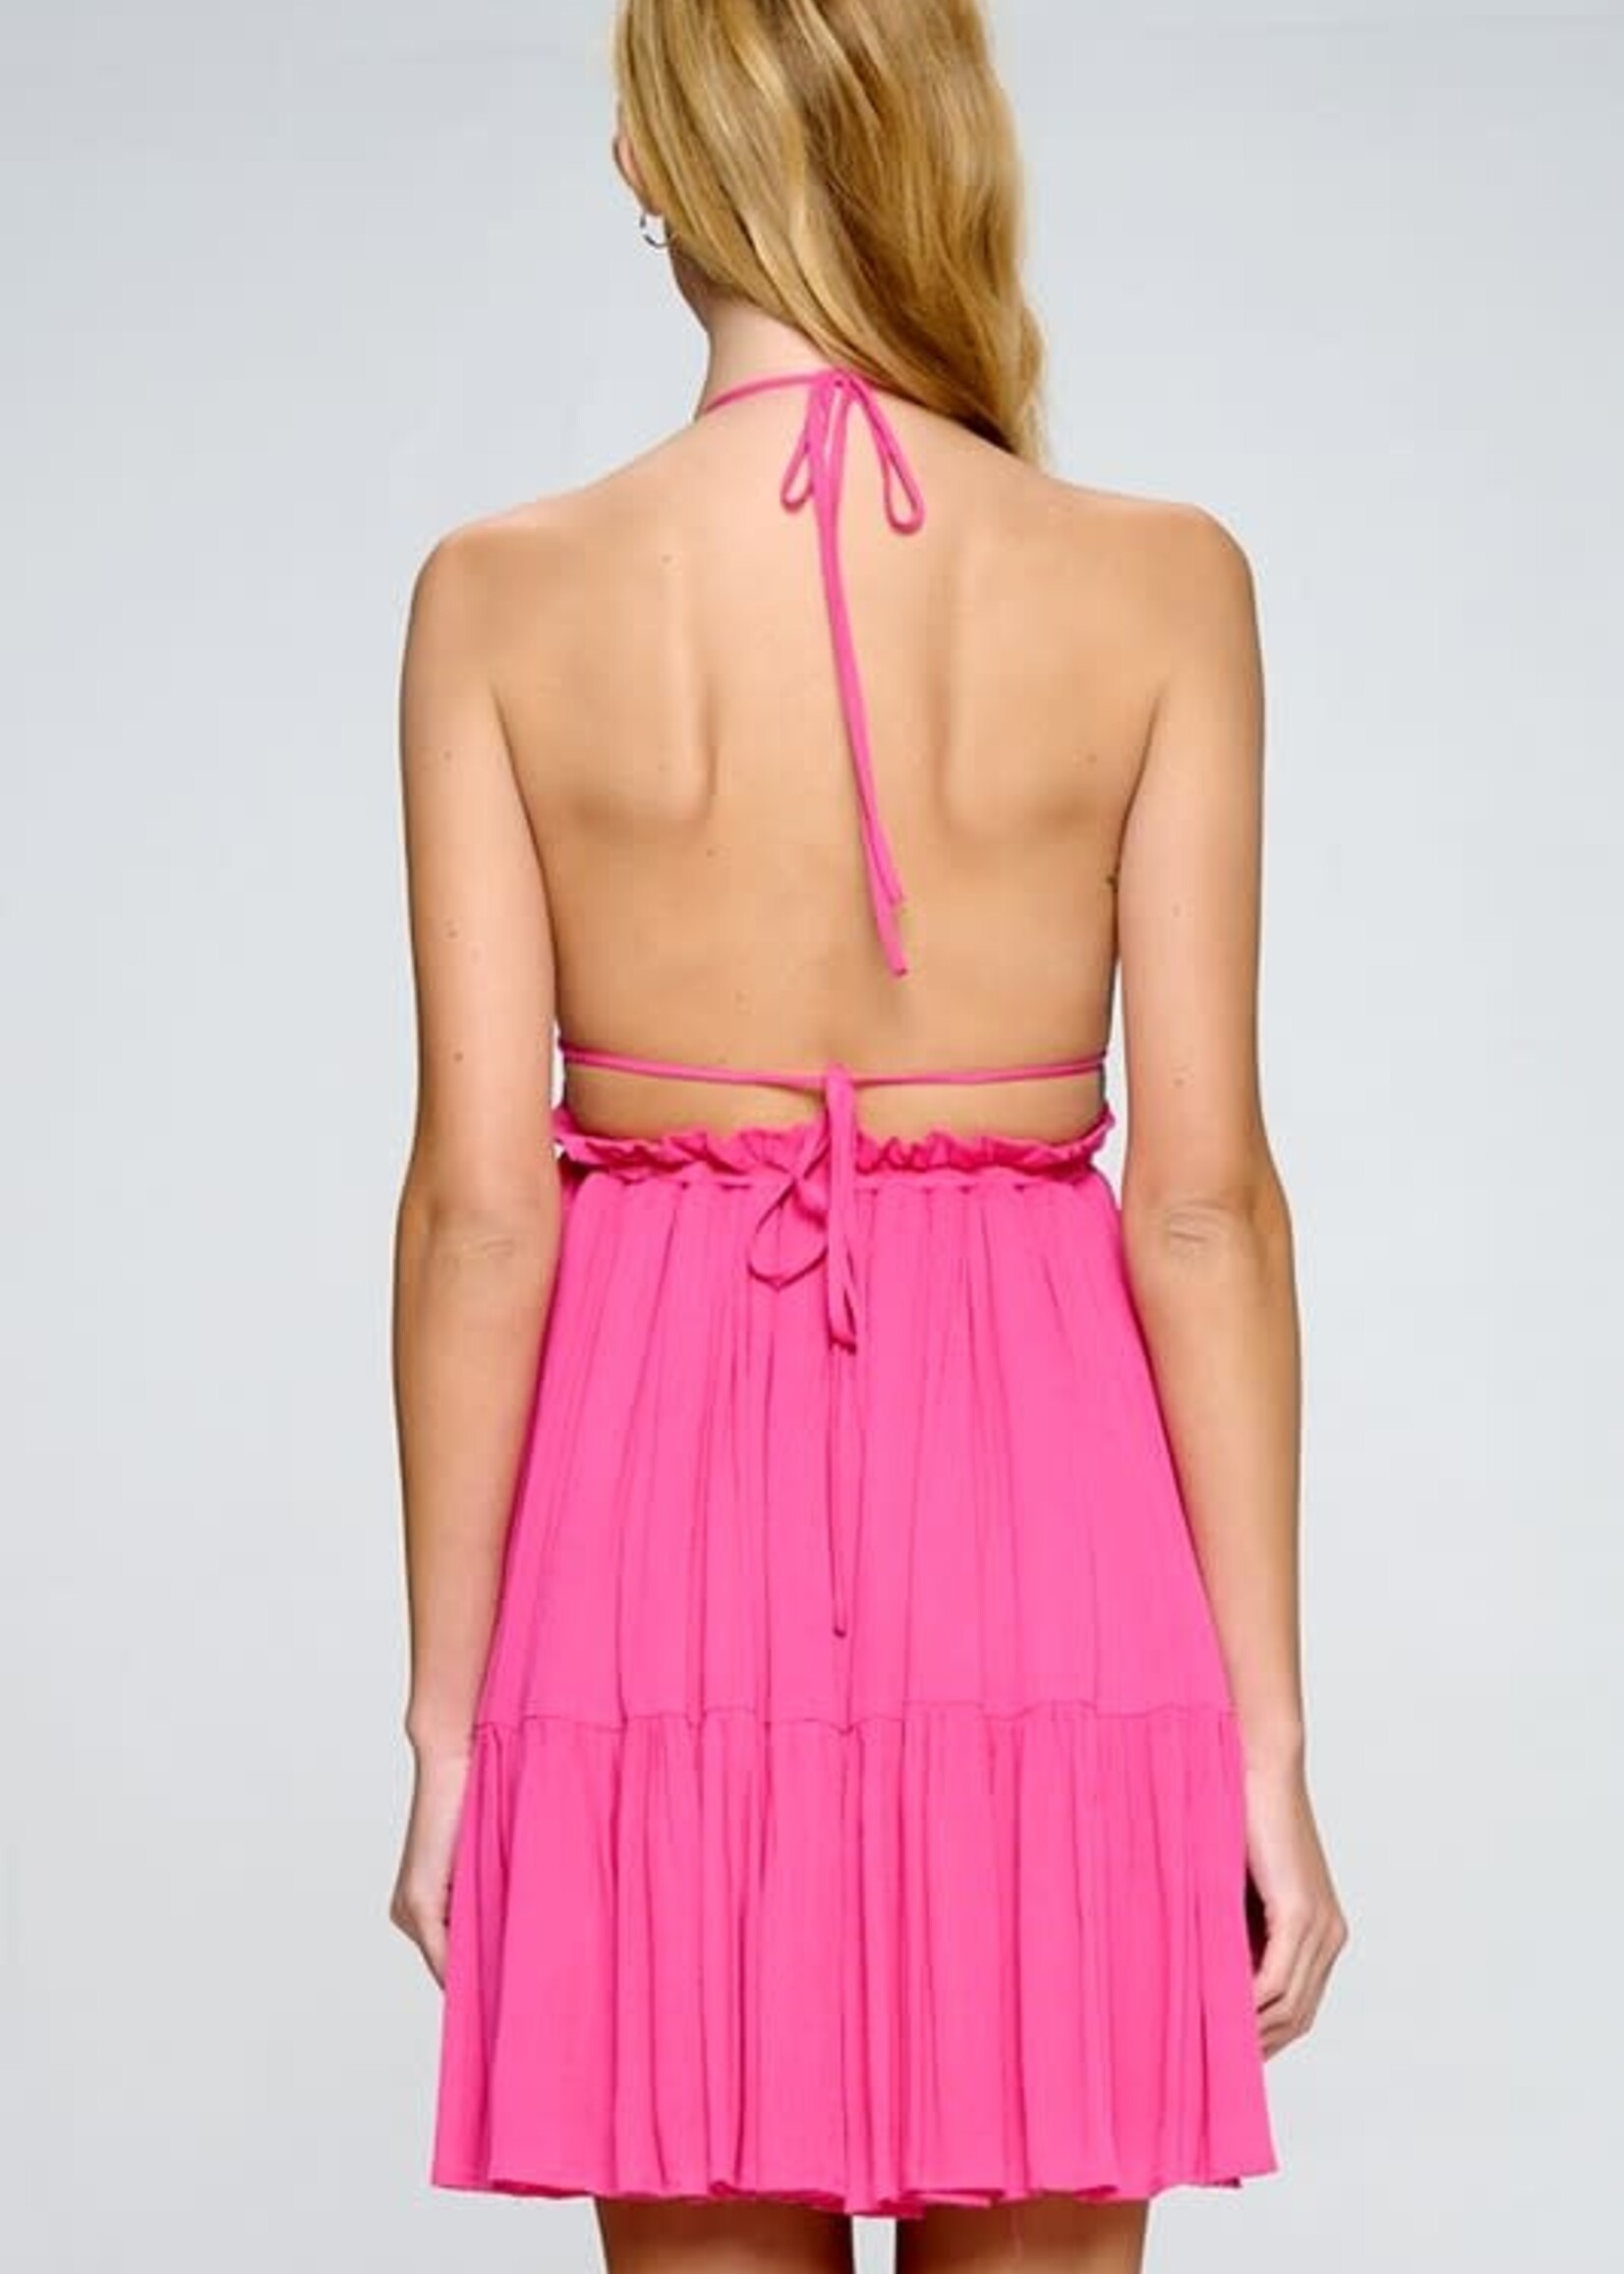 Summer Fun Hot Pink Dress